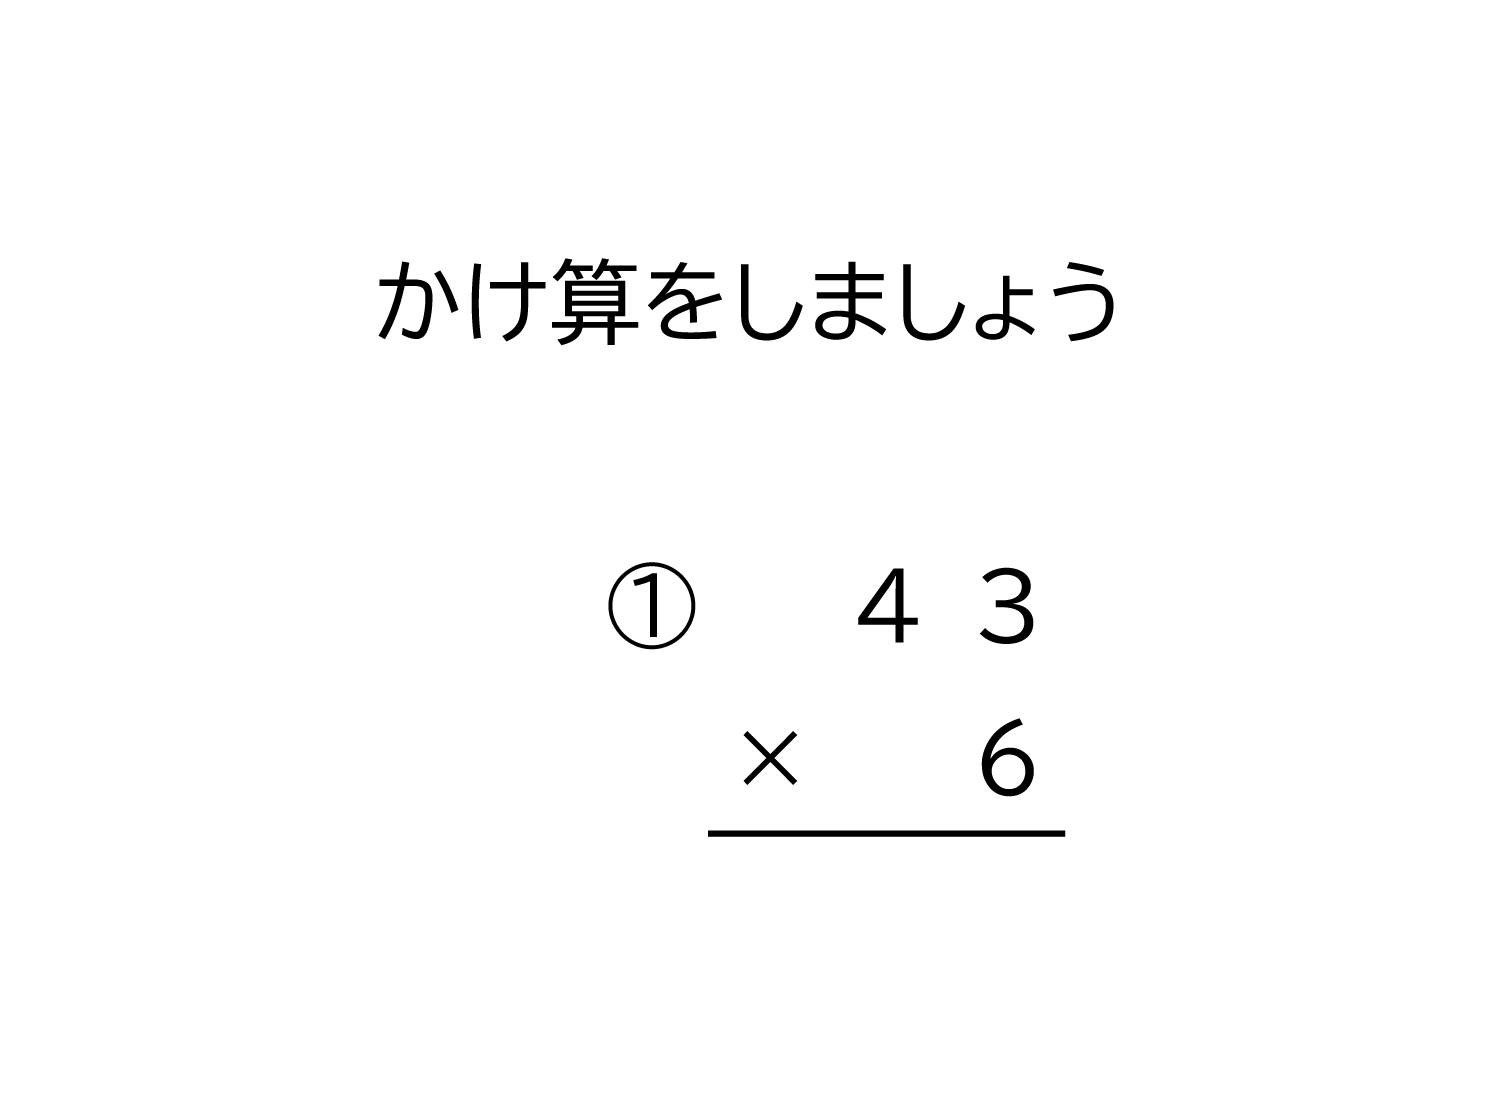 2桁×1桁の十と百の位に繰り上がる掛け算の筆算